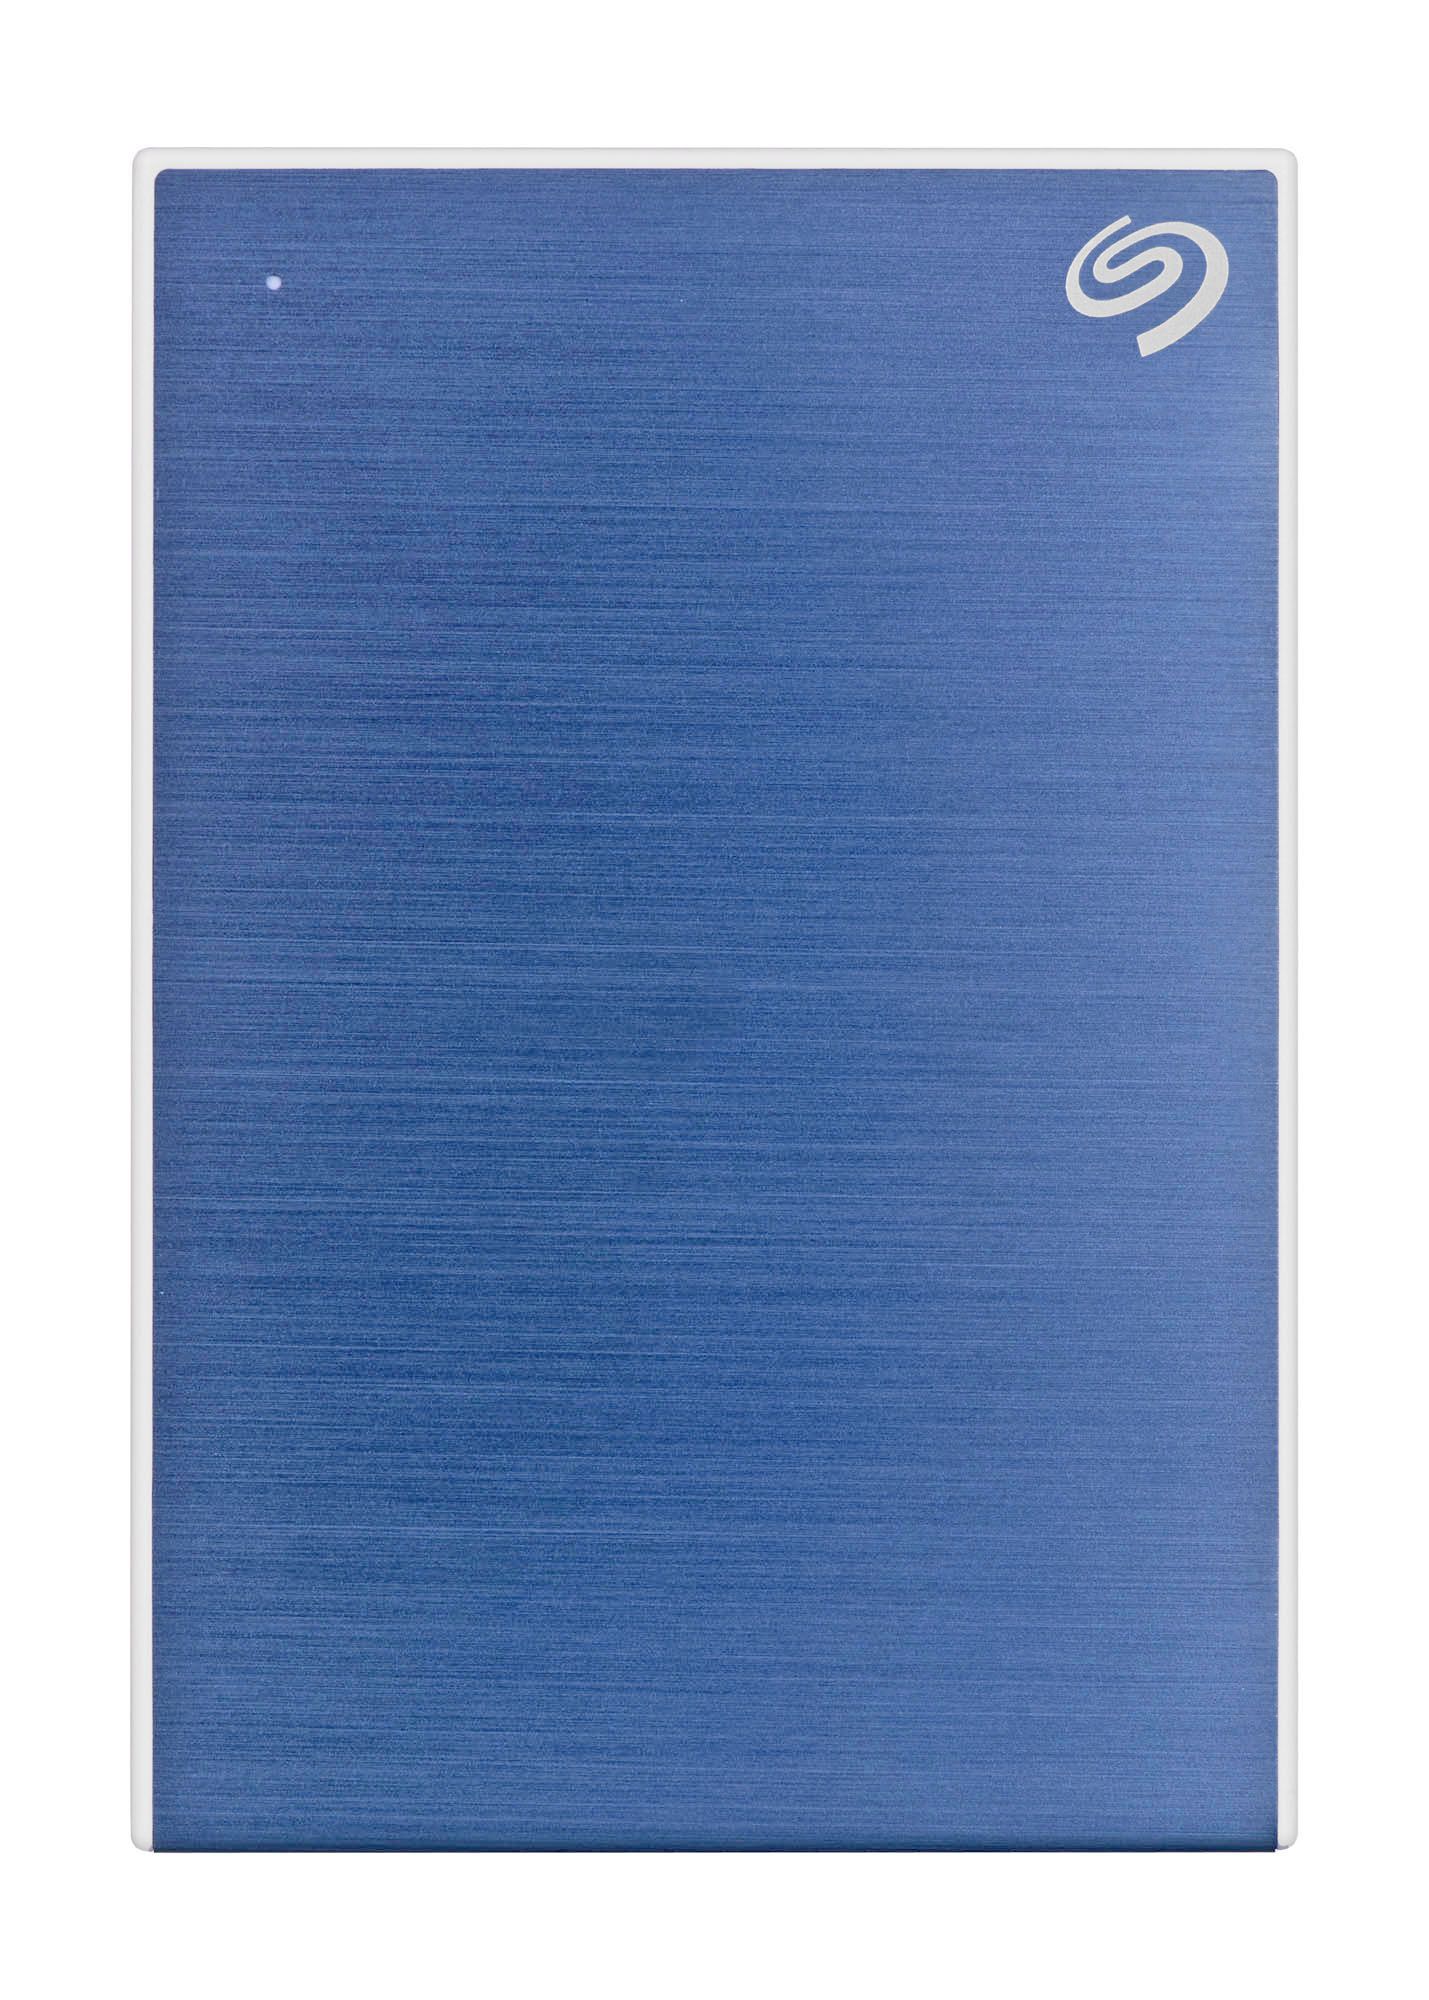 Externí pevný disk Seagate One Touch 4000 GB modrý od ninex.cz